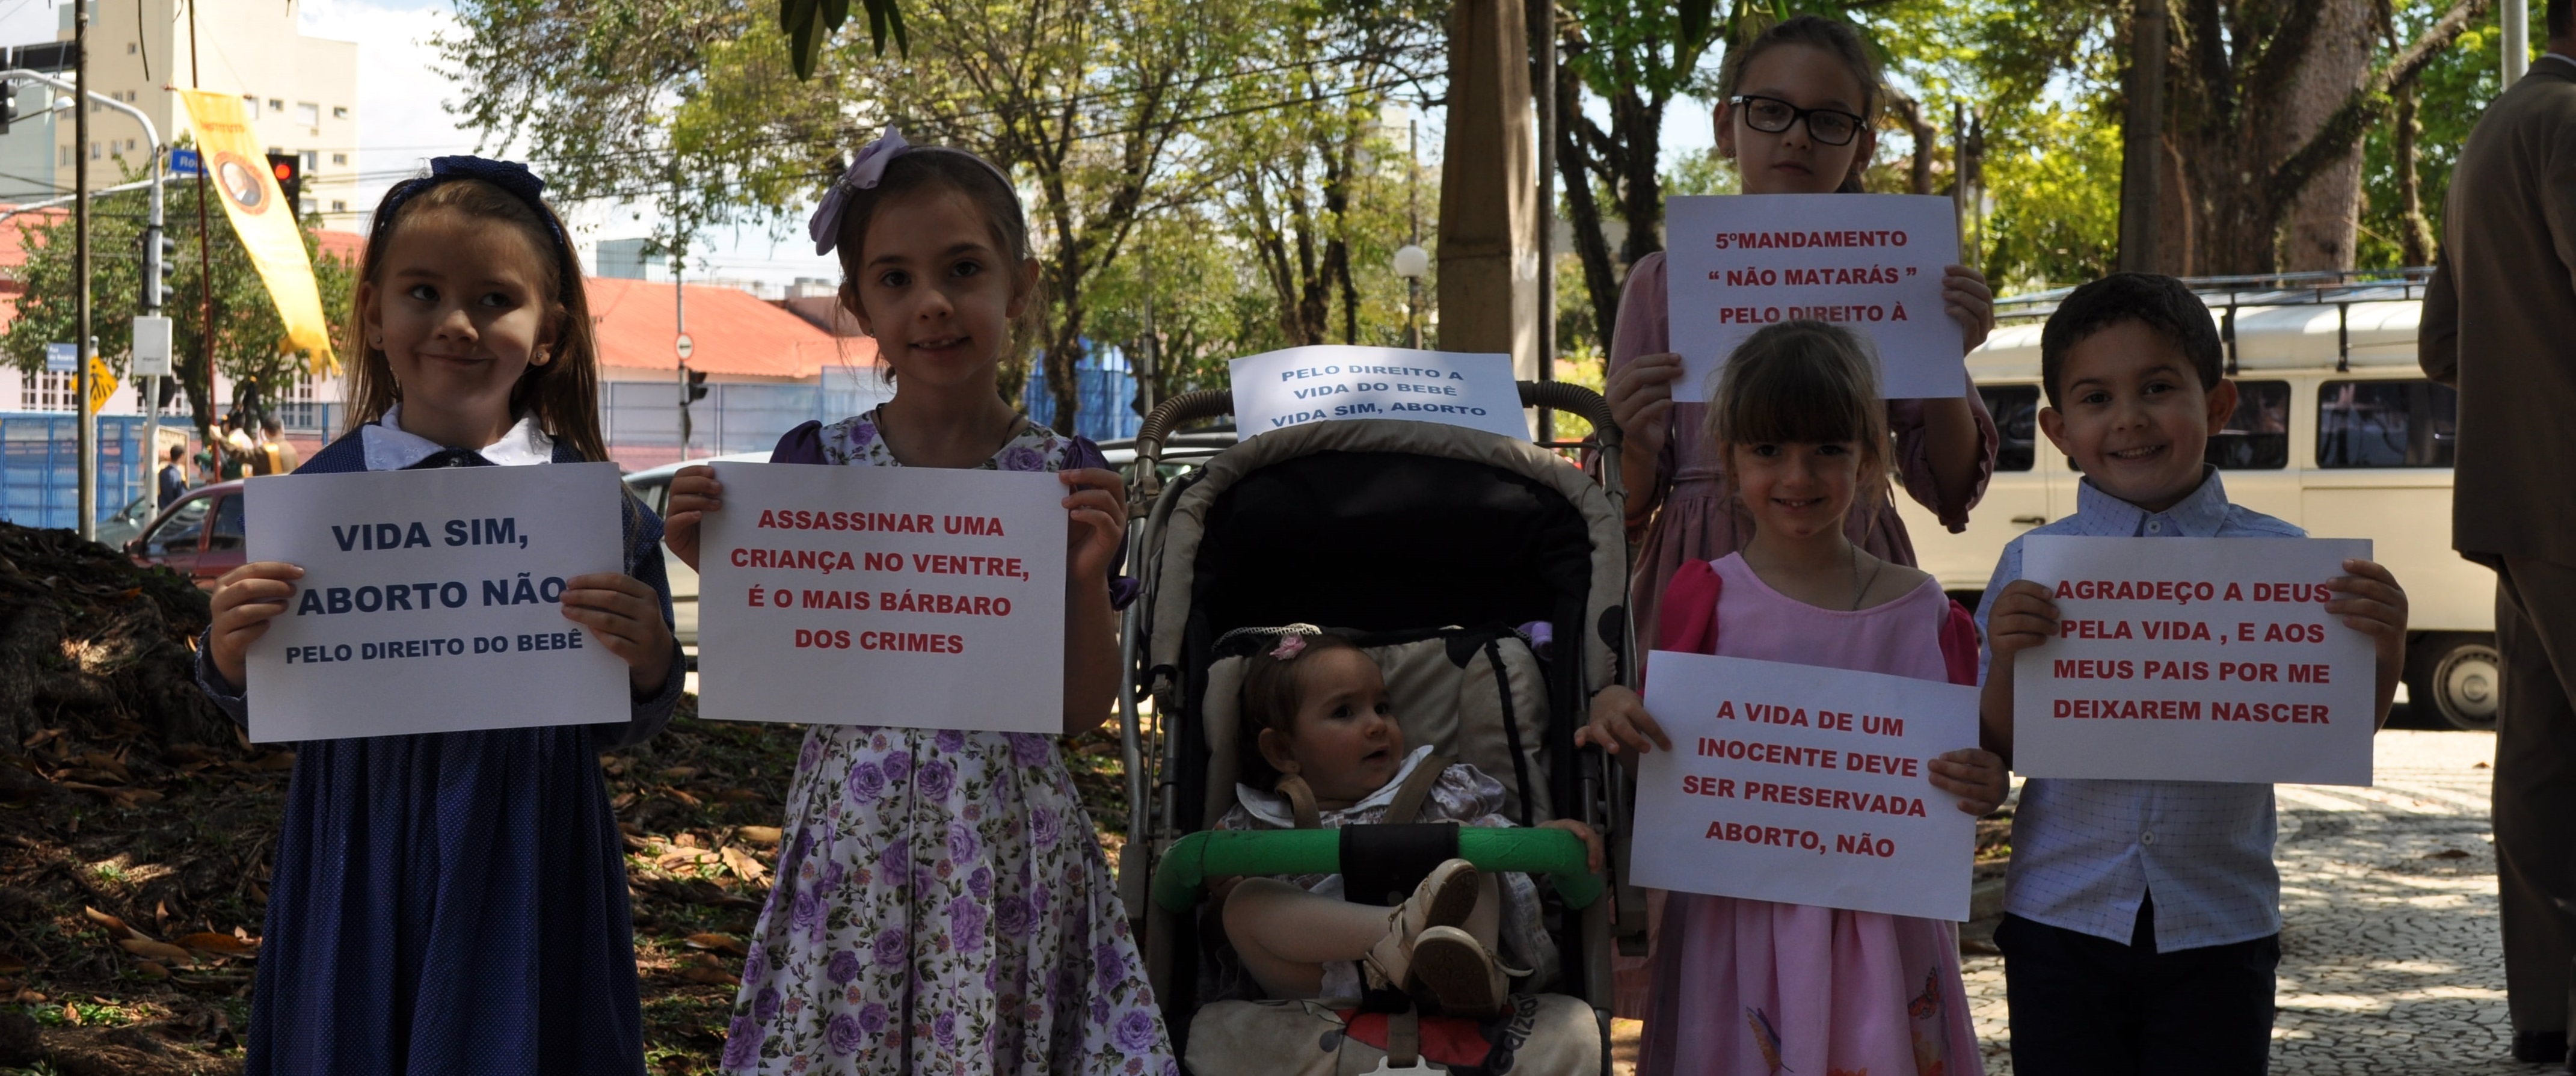 Participe da Marcha pela Vida Brasil – 30/09 – Diga “Não!” ao Aborto